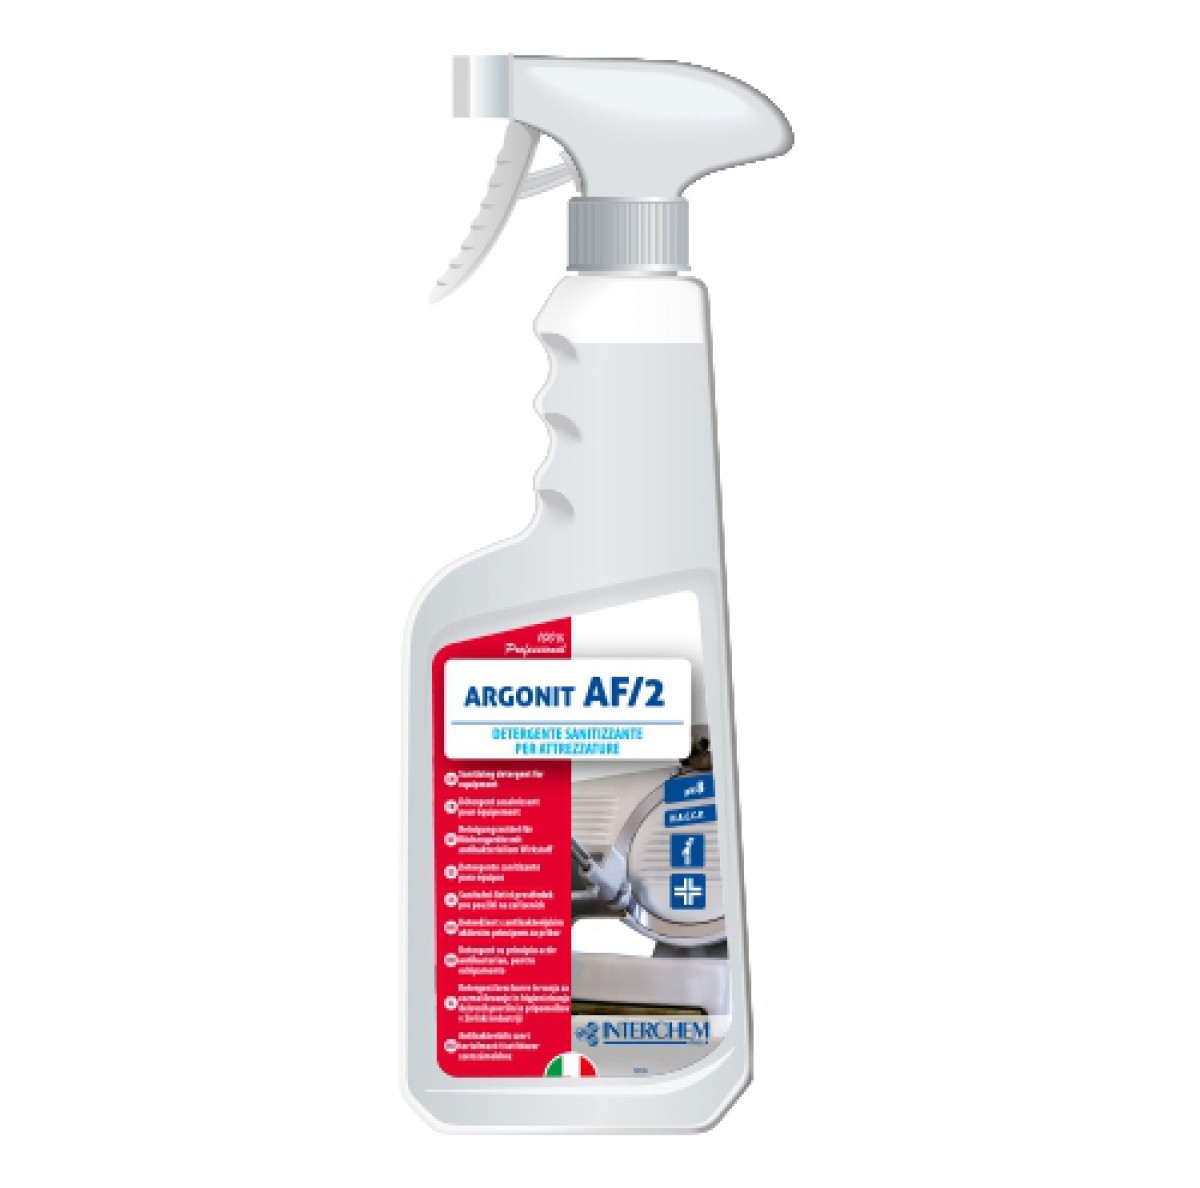 ARGONIT AF/2 - 750 ml / Sredstvo s aktivnim antibakterijskim principom / Namjenjen za čišćenje i dezinfekciju pribora / Bez mirisa i umjetnih boja / Pogodan za sve površine (čelik, plastika, aluminiji)